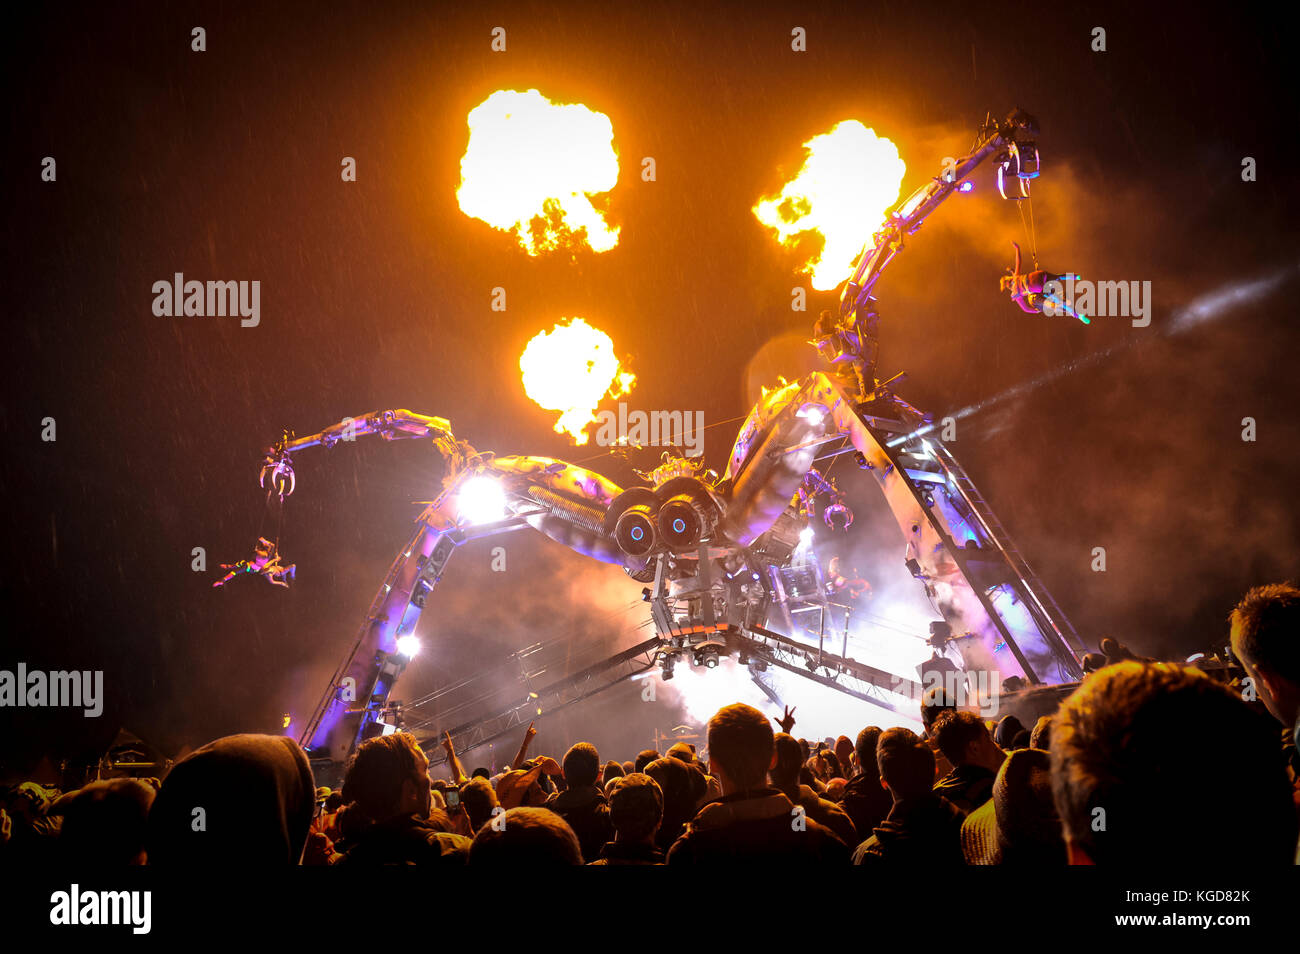 Festivalbesucher sehen Sie eine Performance von Arcadia, eine riesige Spinne, bestehend aus Flammen und Laser in der Melodie zu den Bass-stampfenden Musik DJs an der Kunst und Musik Stockfoto